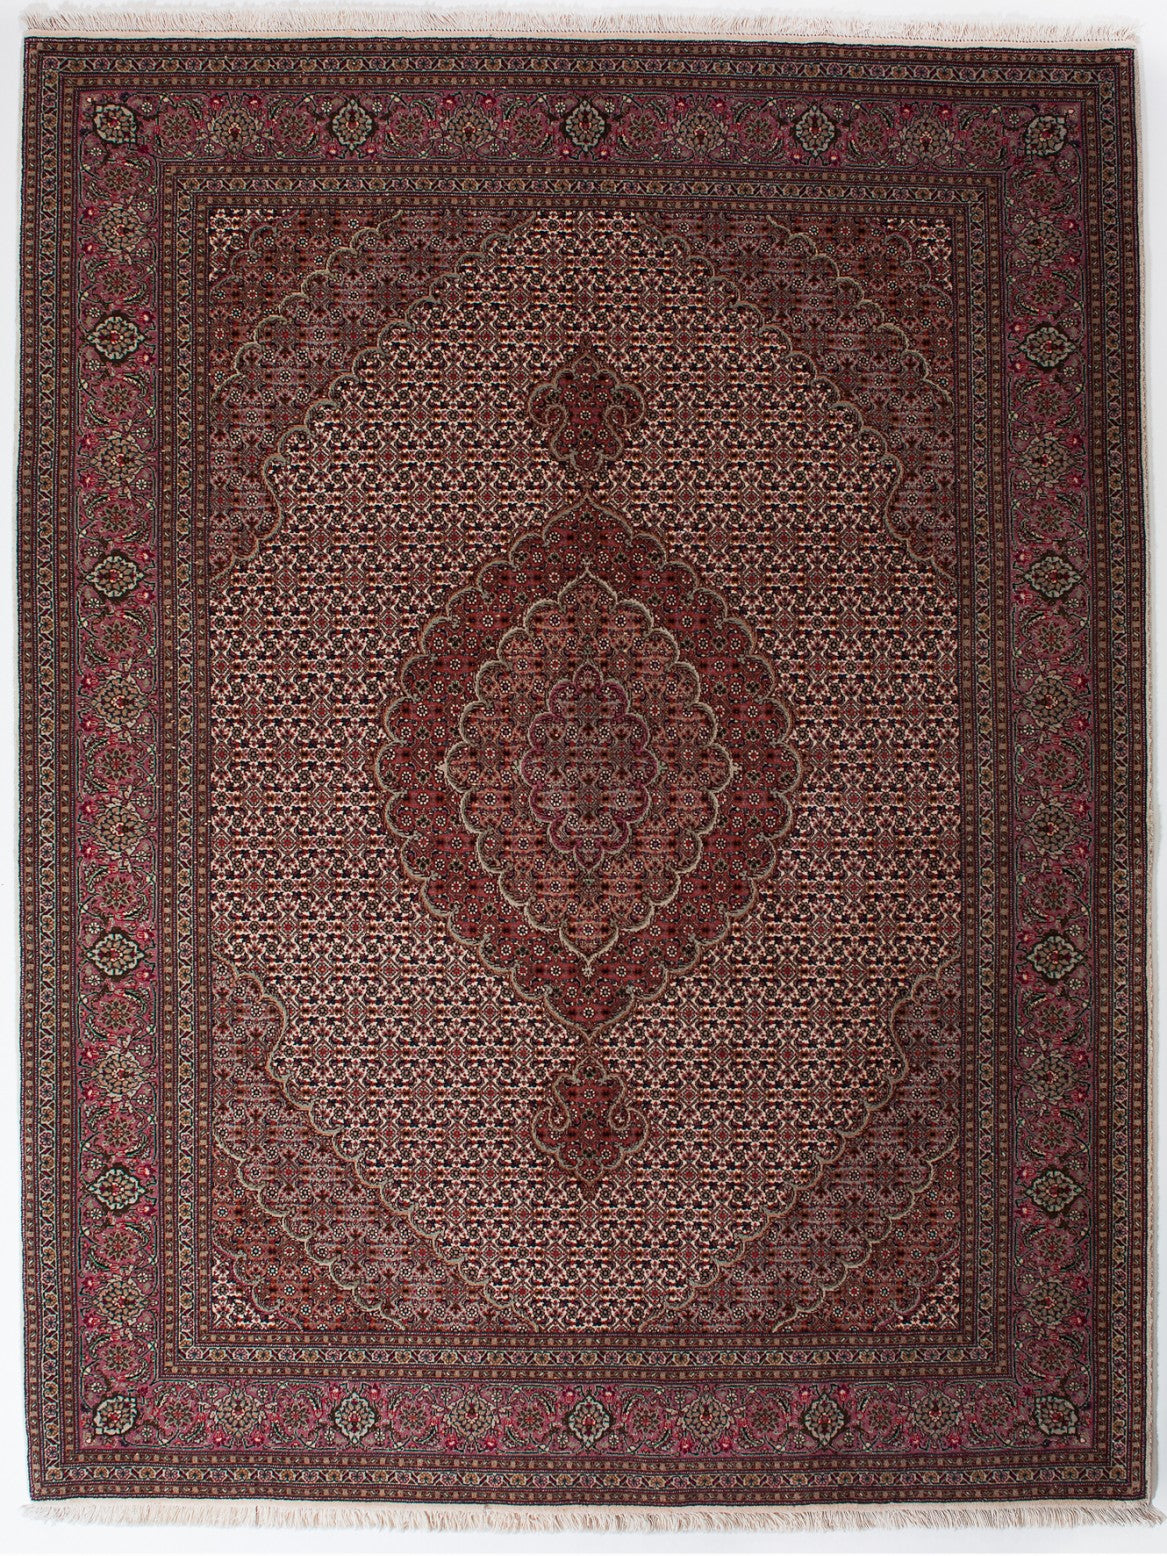 TABRIZ IRAN 205 x 159 cm